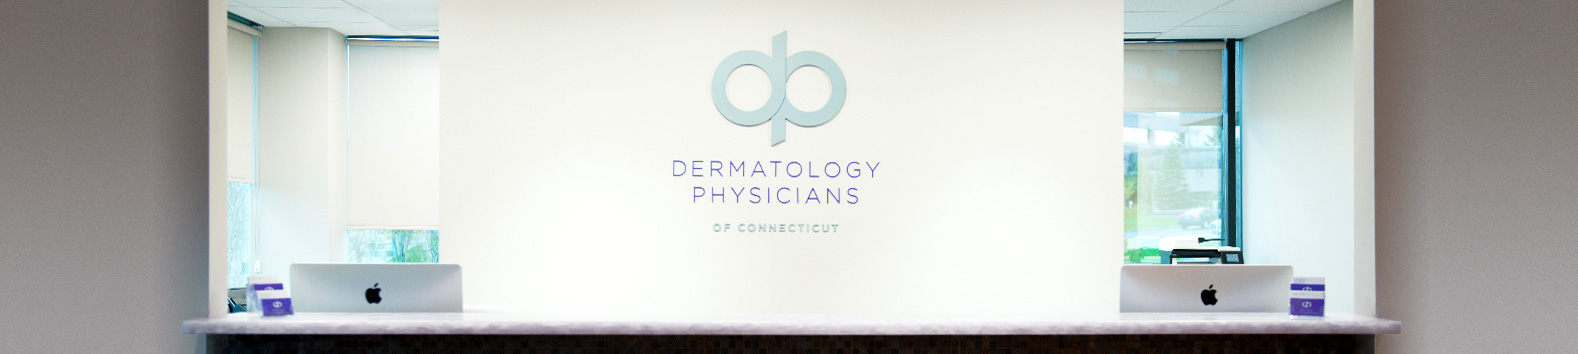 New Dermatology Patients CT